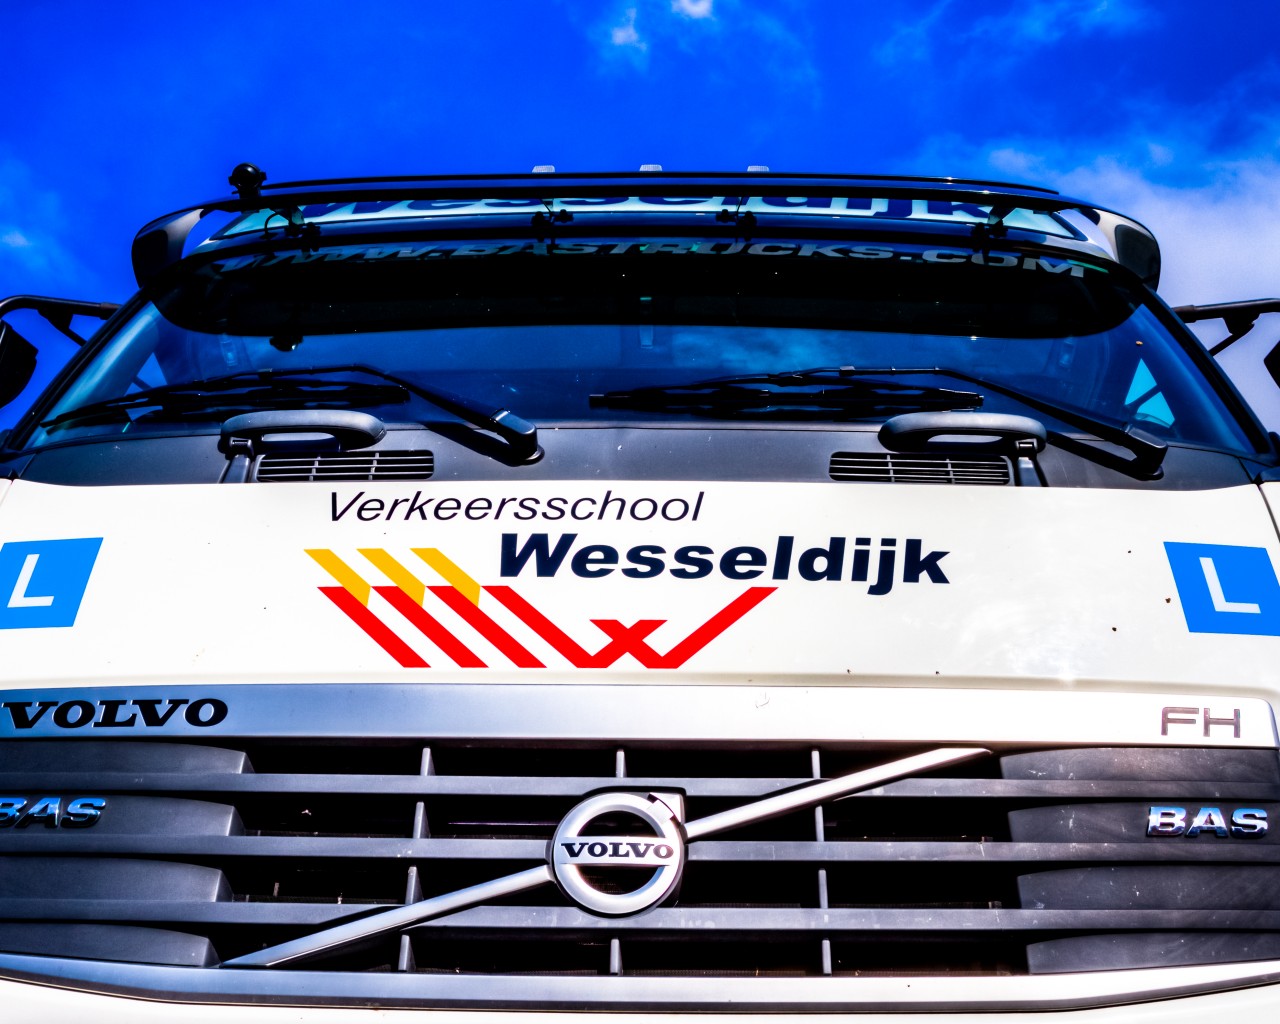 Verkeersschool Wesseldijk